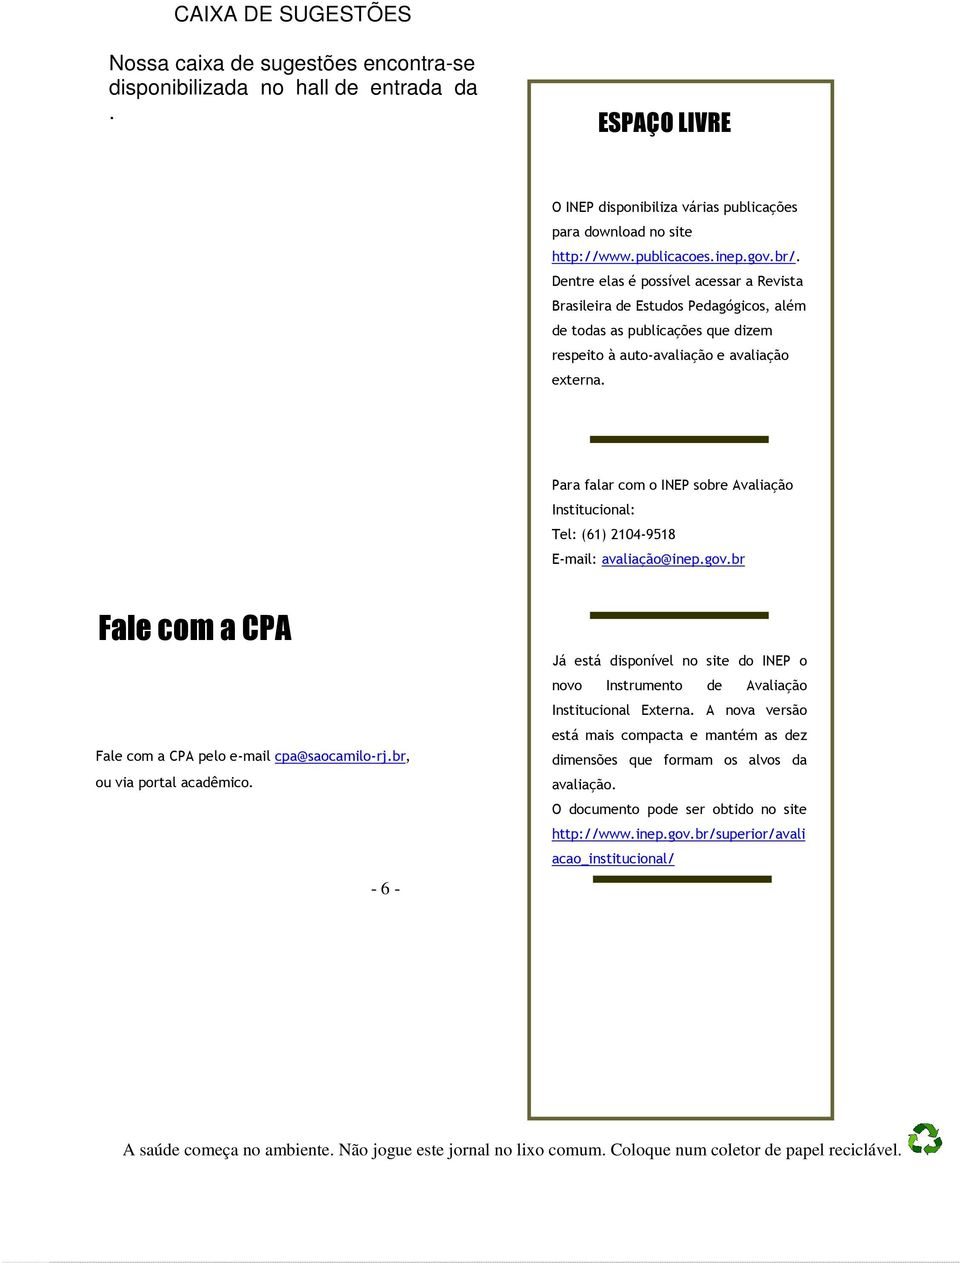 Para falar com o INEP sobre Avaliação Institucional: Tel: (61) 2104-9518 E-mail: avaliação@inep.gov.br Fale com a CPA Fale com a CPA pelo e-mail cpa@saocamilo-rj.br, ou via portal acadêmico.